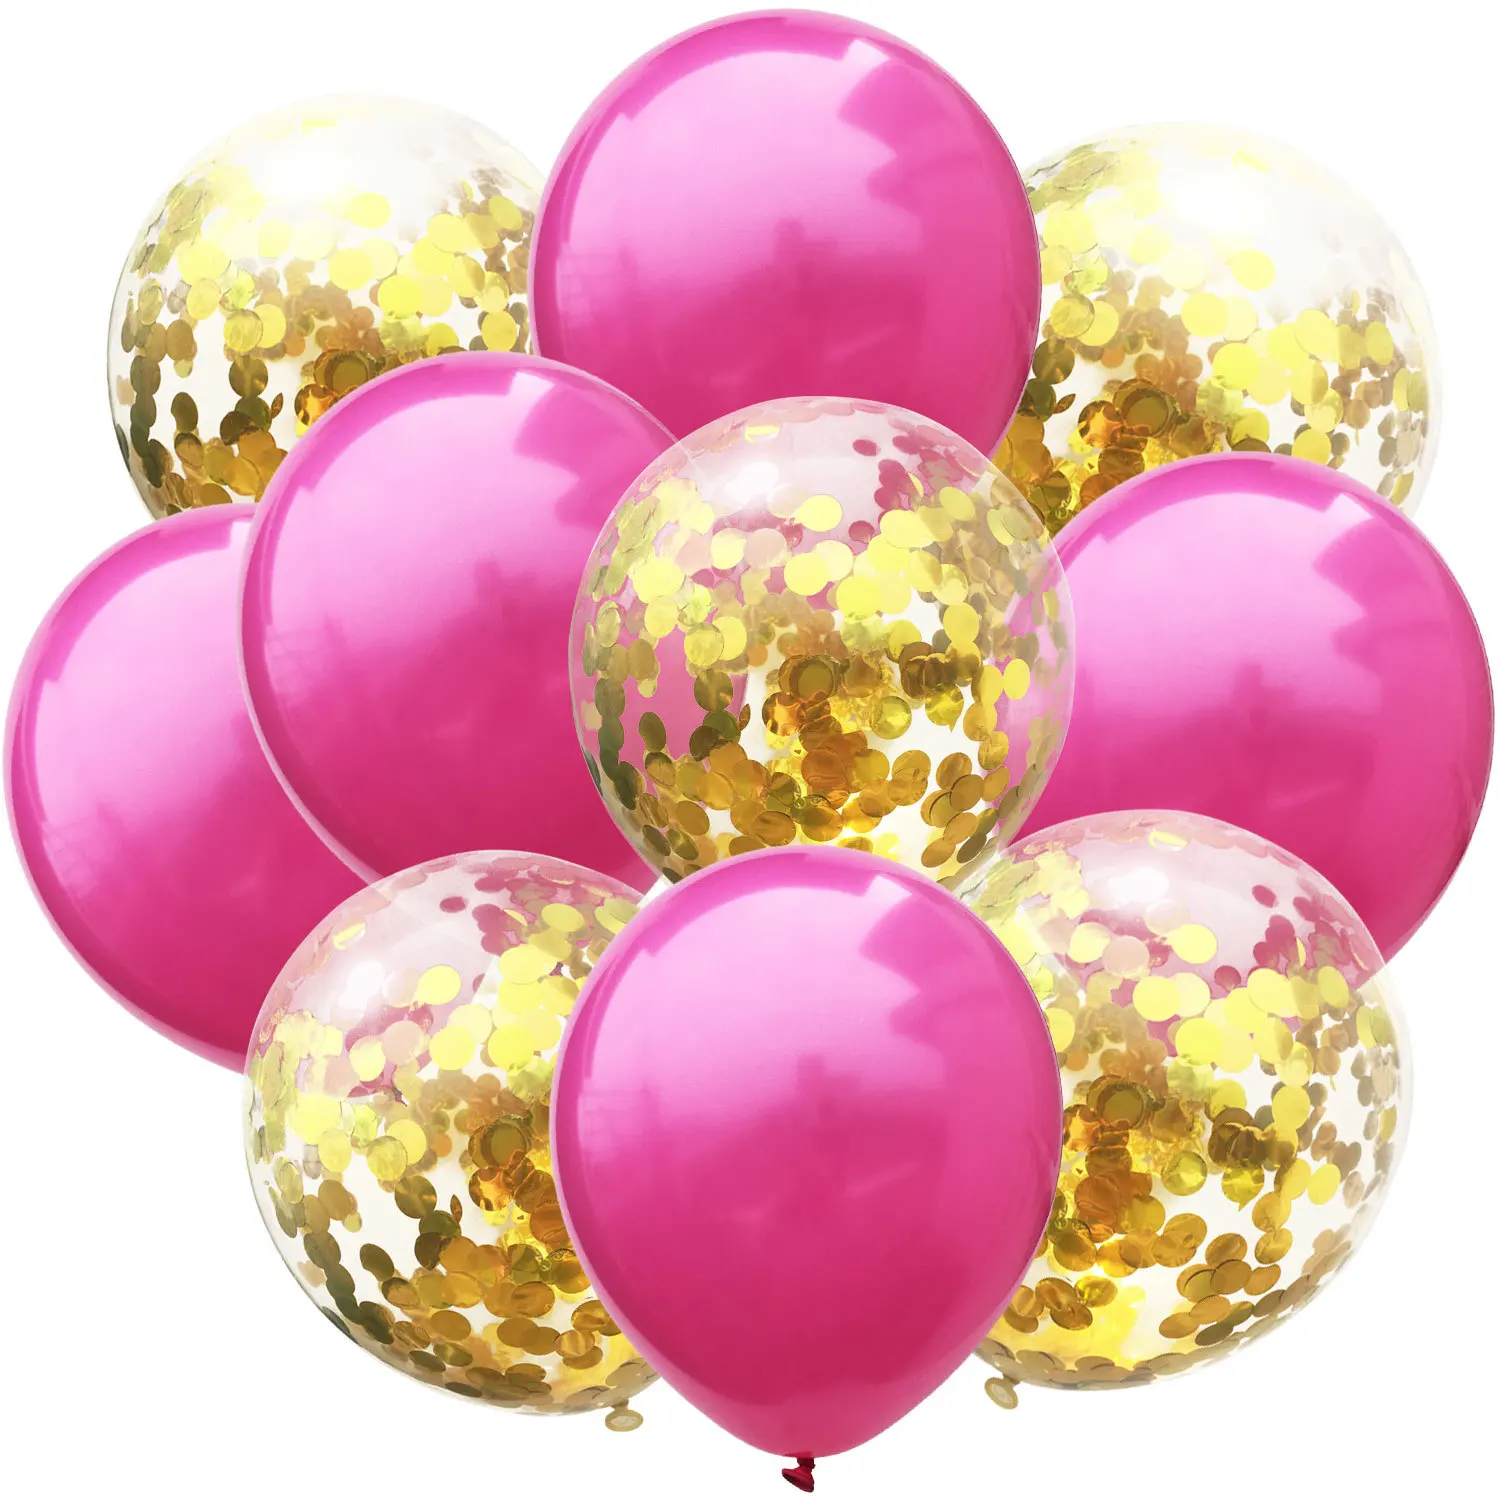 10 шт./компл. 12 дюймов синий/серебристый/красный/черный латекс воздушный шар Многоцветный Свадебные украшения воздушные шары с днем День рождения баллон гелия - Цвет: A05